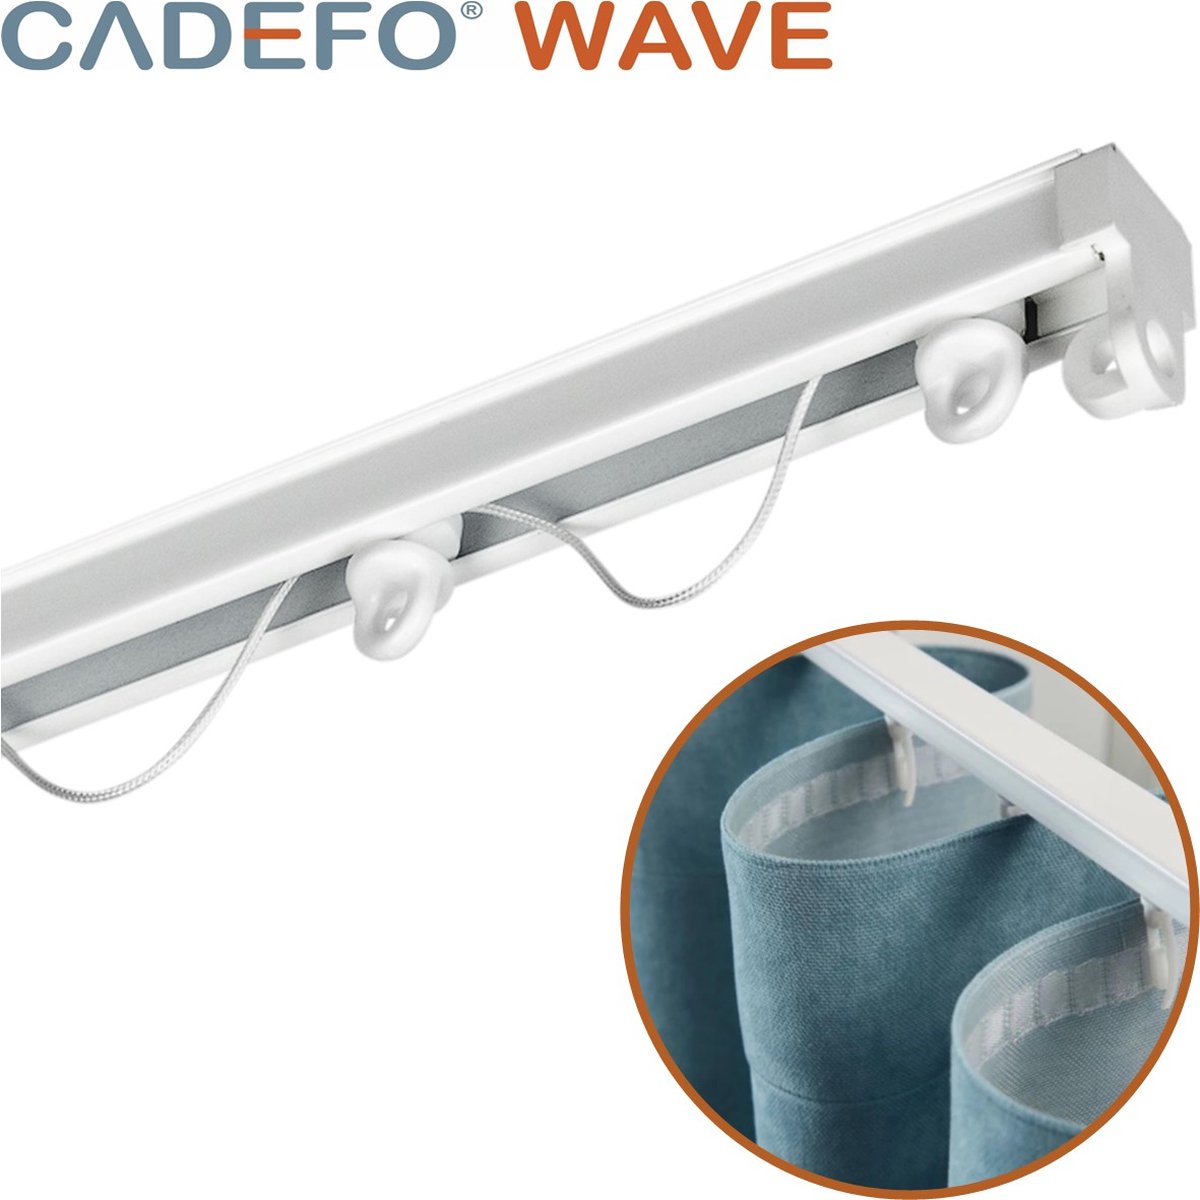 CADEFO WAVE (351 - 400 cm) Gordijnrails - Compleet op maat! - UIT 1 STUK - Leverbaar tot 6 meter - Plafondbevestiging - Lengte 376 cm